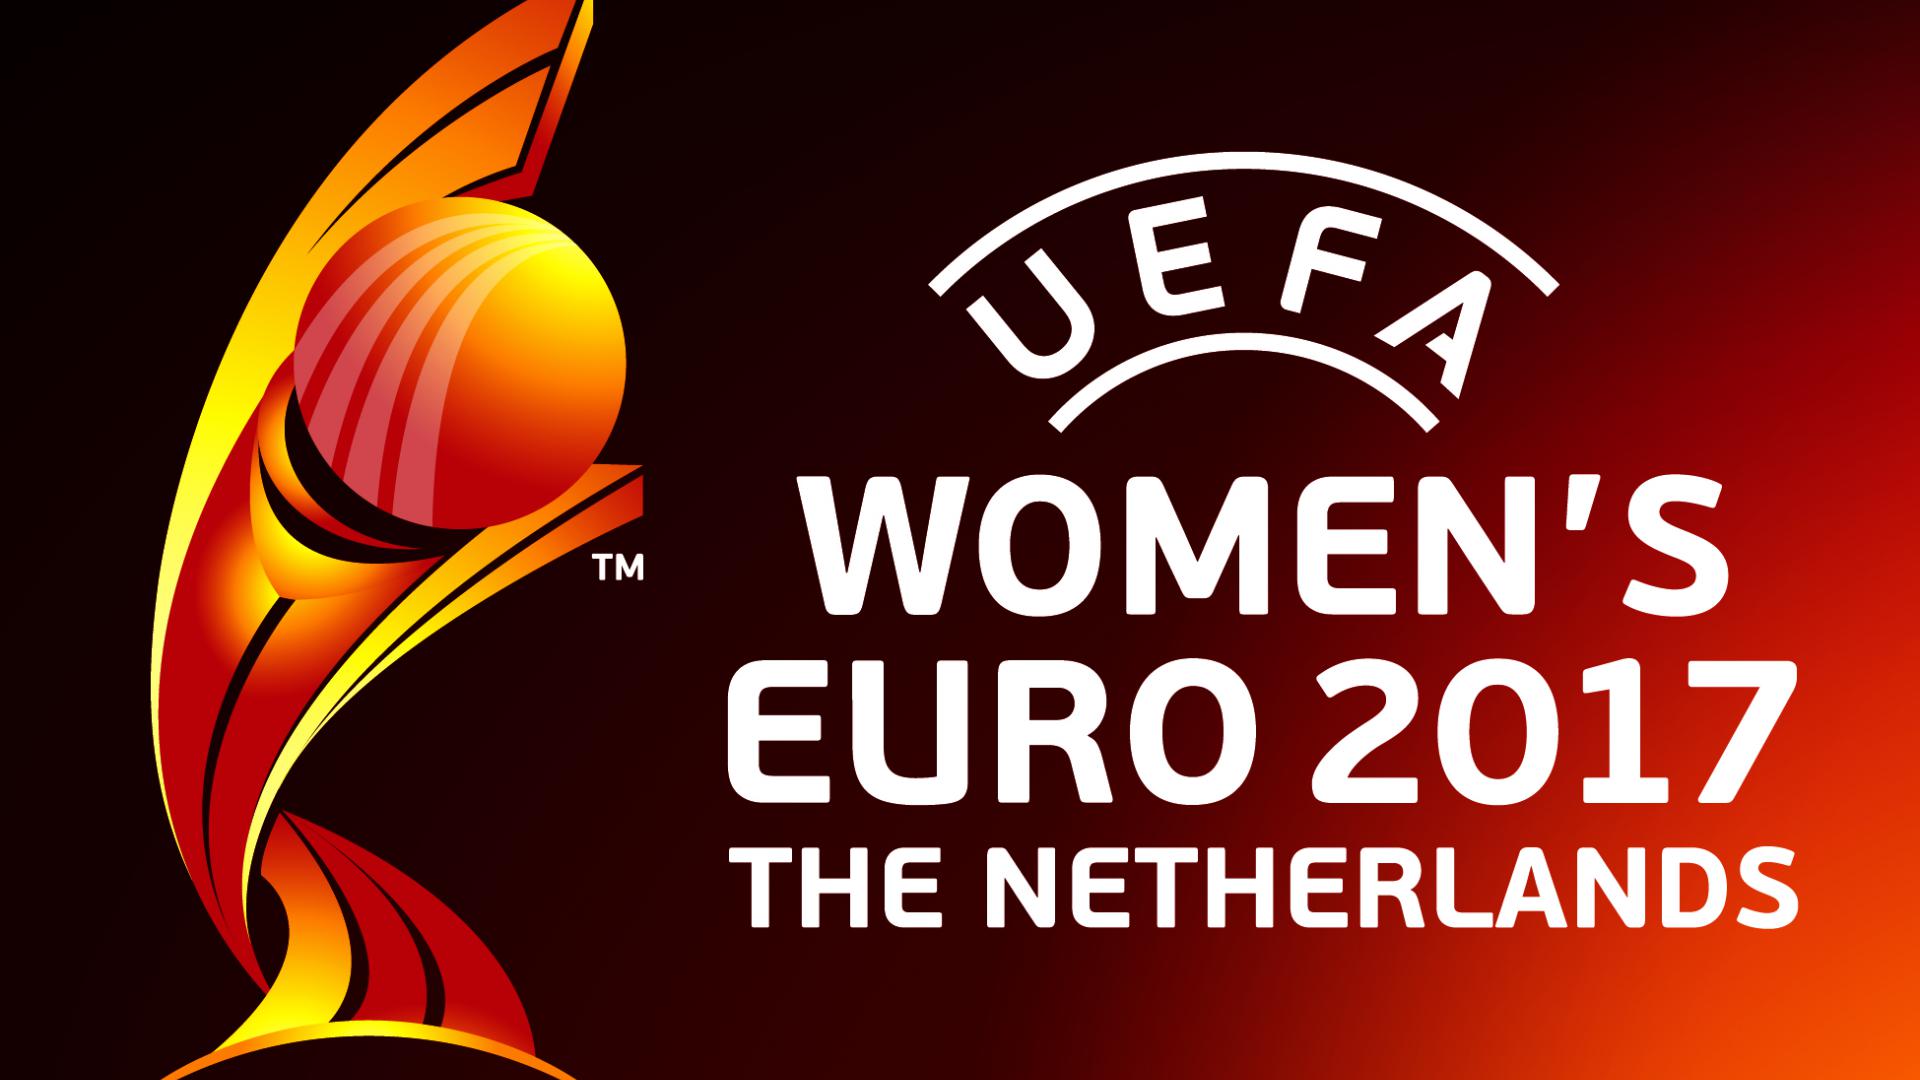 Afbeeldingsresultaat voor Euro2017 vrouwen deventer